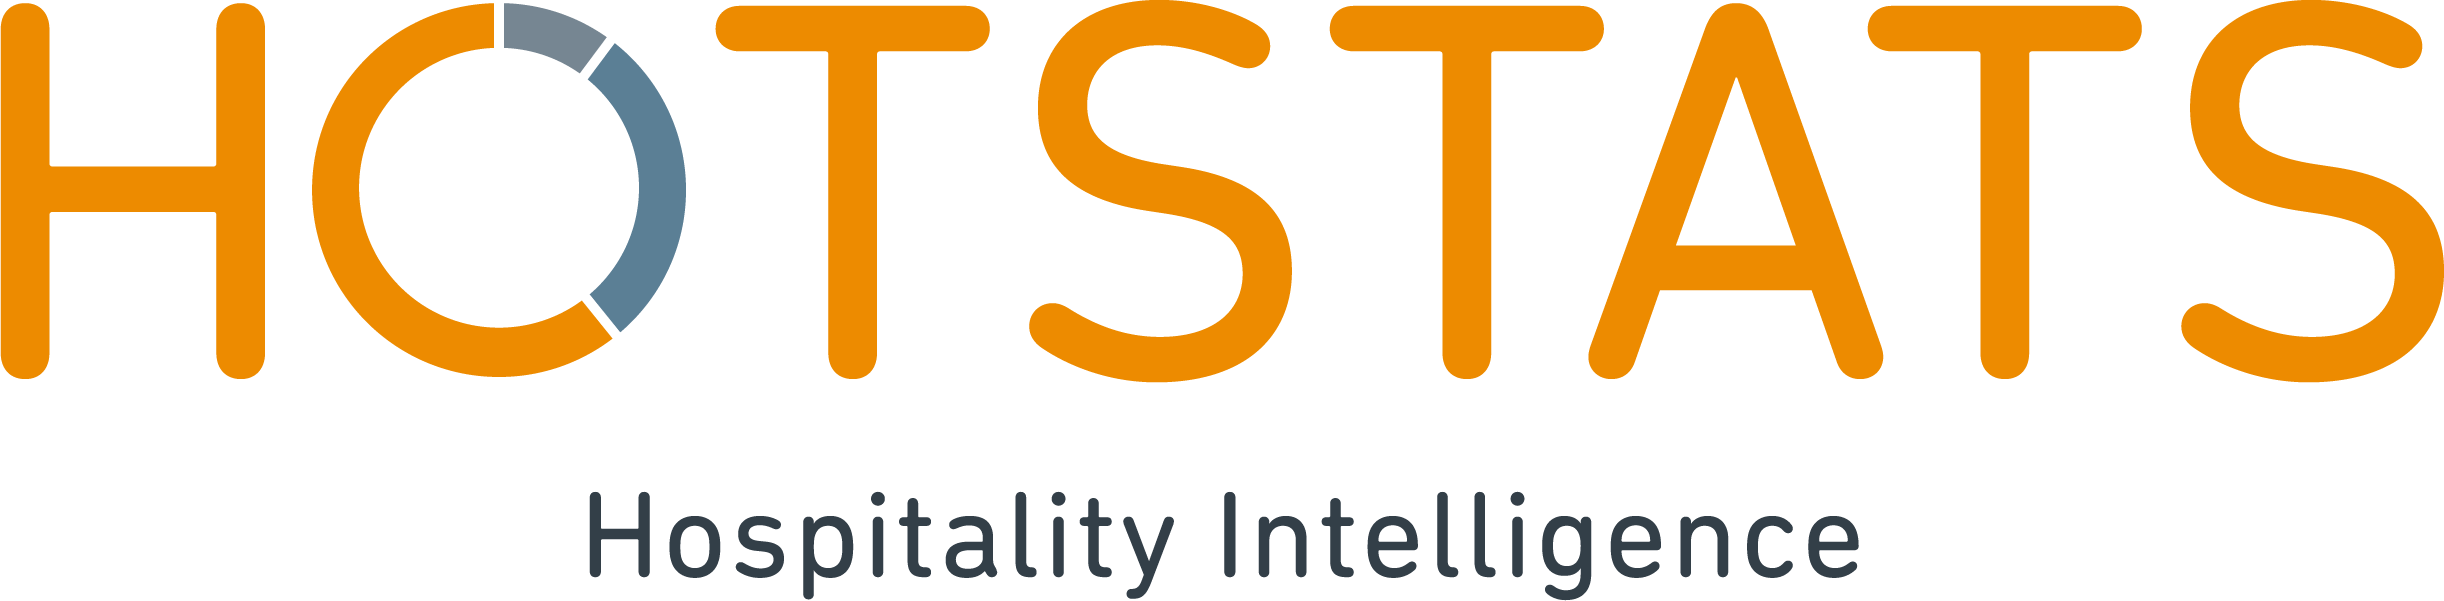 HotStats logo